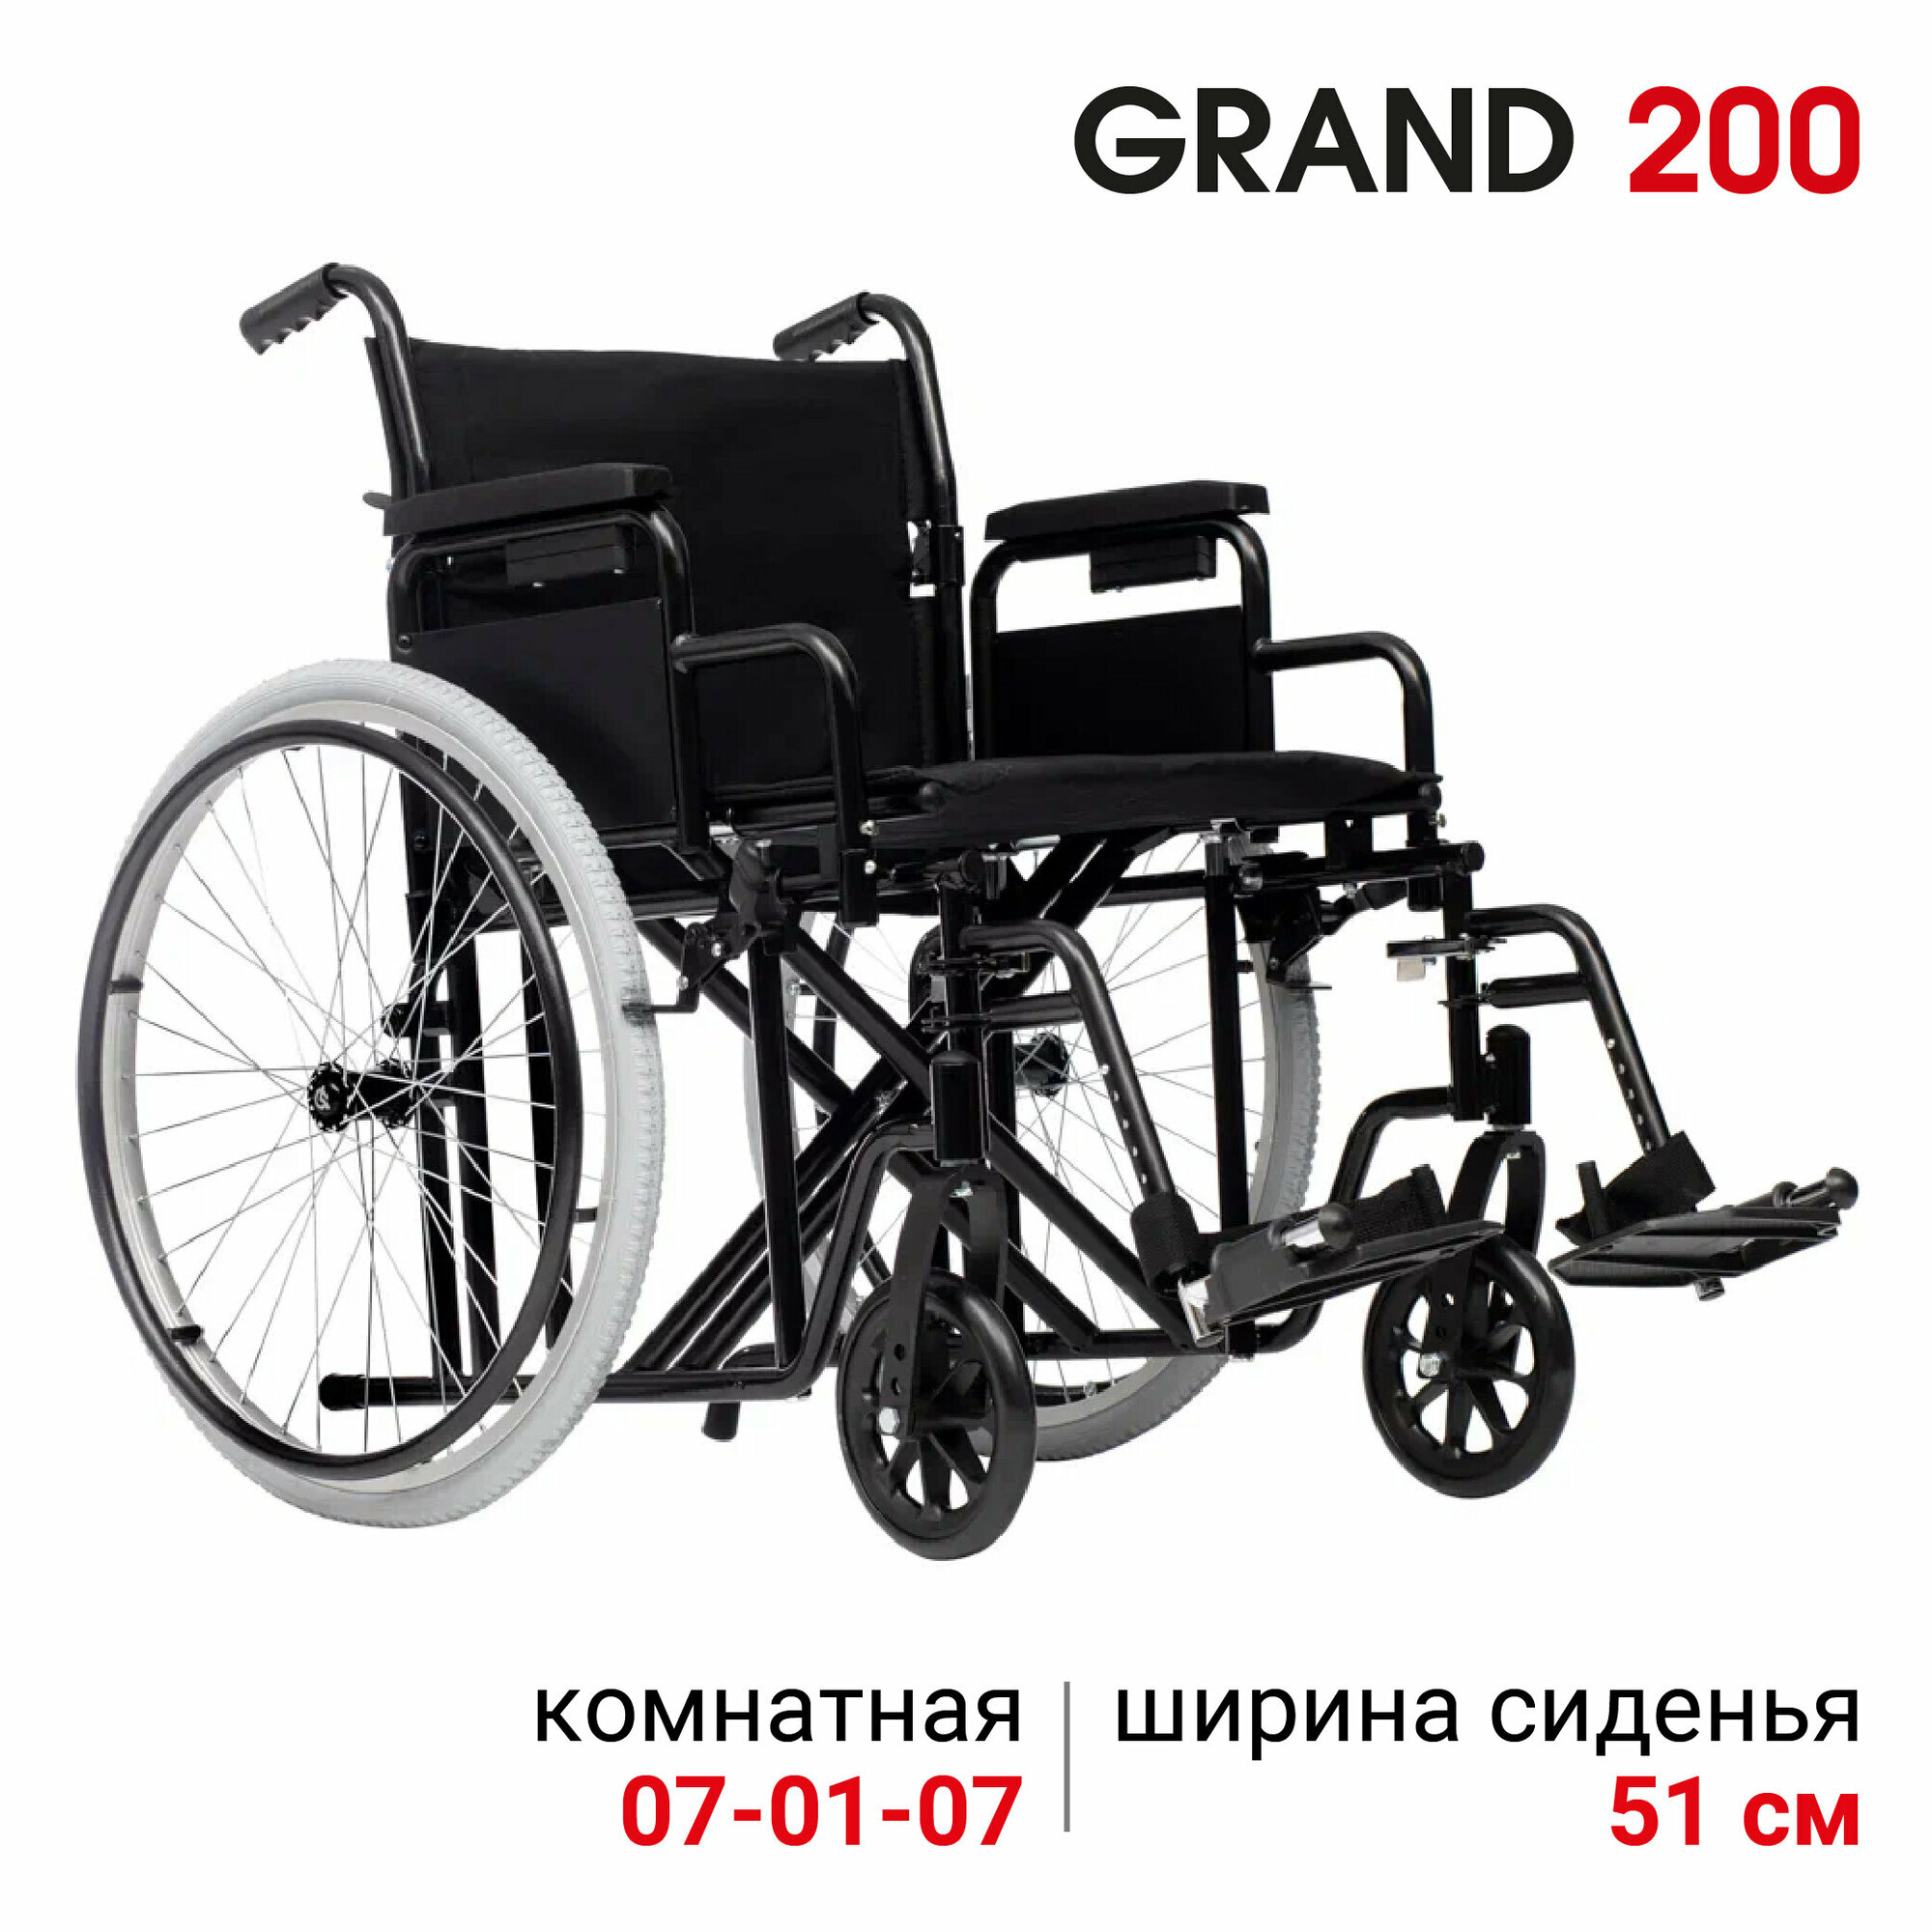 Кресло-коляска механическая повышенной грузоподъемности Ortonica Trend 25/Grand 200 51UU ширина сиденья 51 см цельнолитые колеса